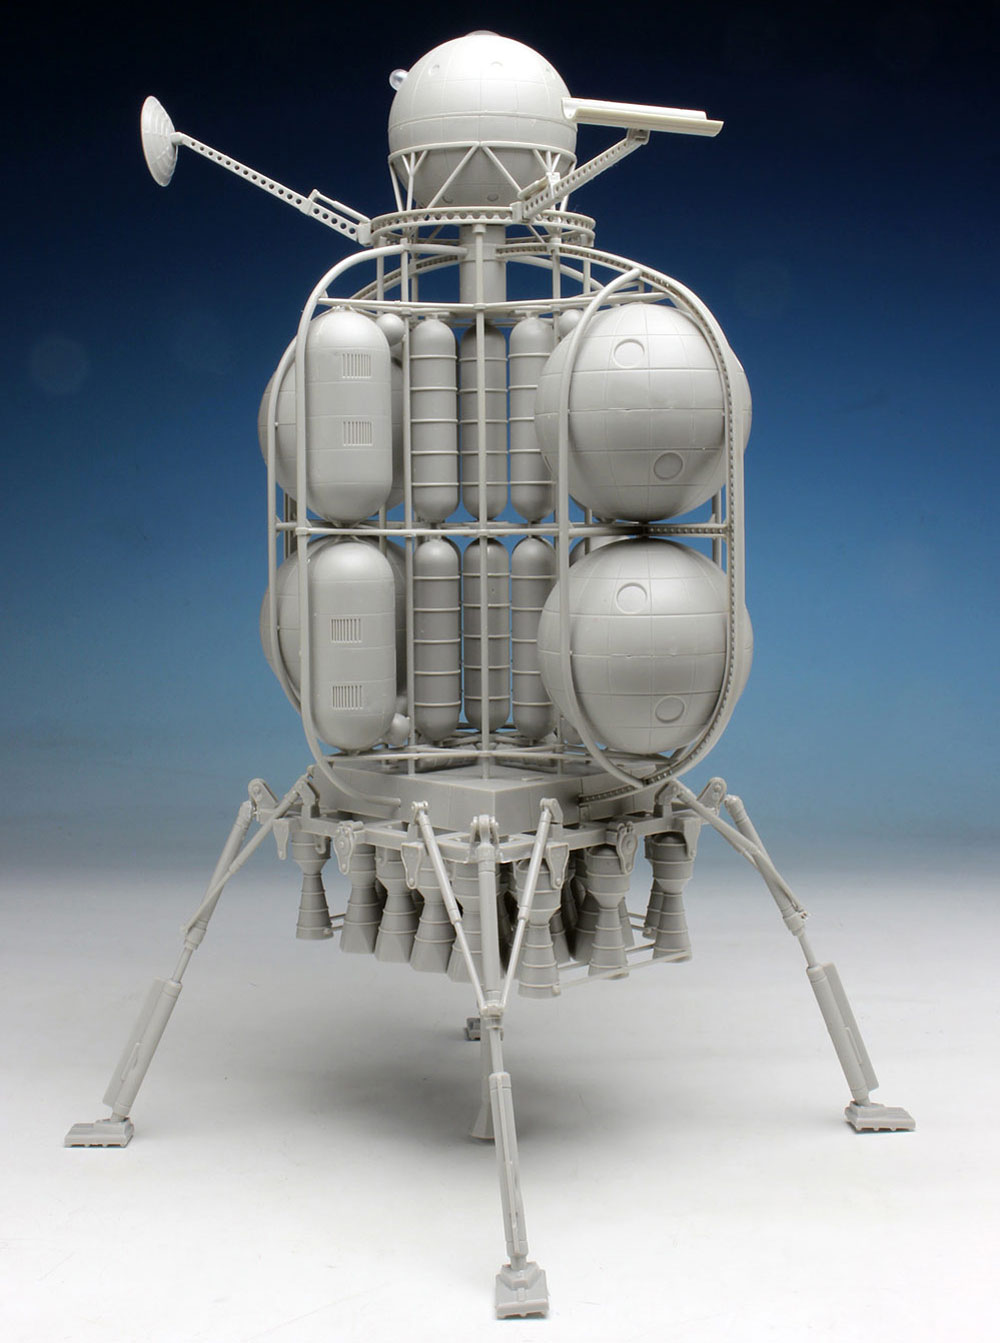 ムーンランダー フォン・ブラウン博士の月面探査機 プラモデル (ペガサスホビー プラスチックモデルキット No.9109) 商品画像_2